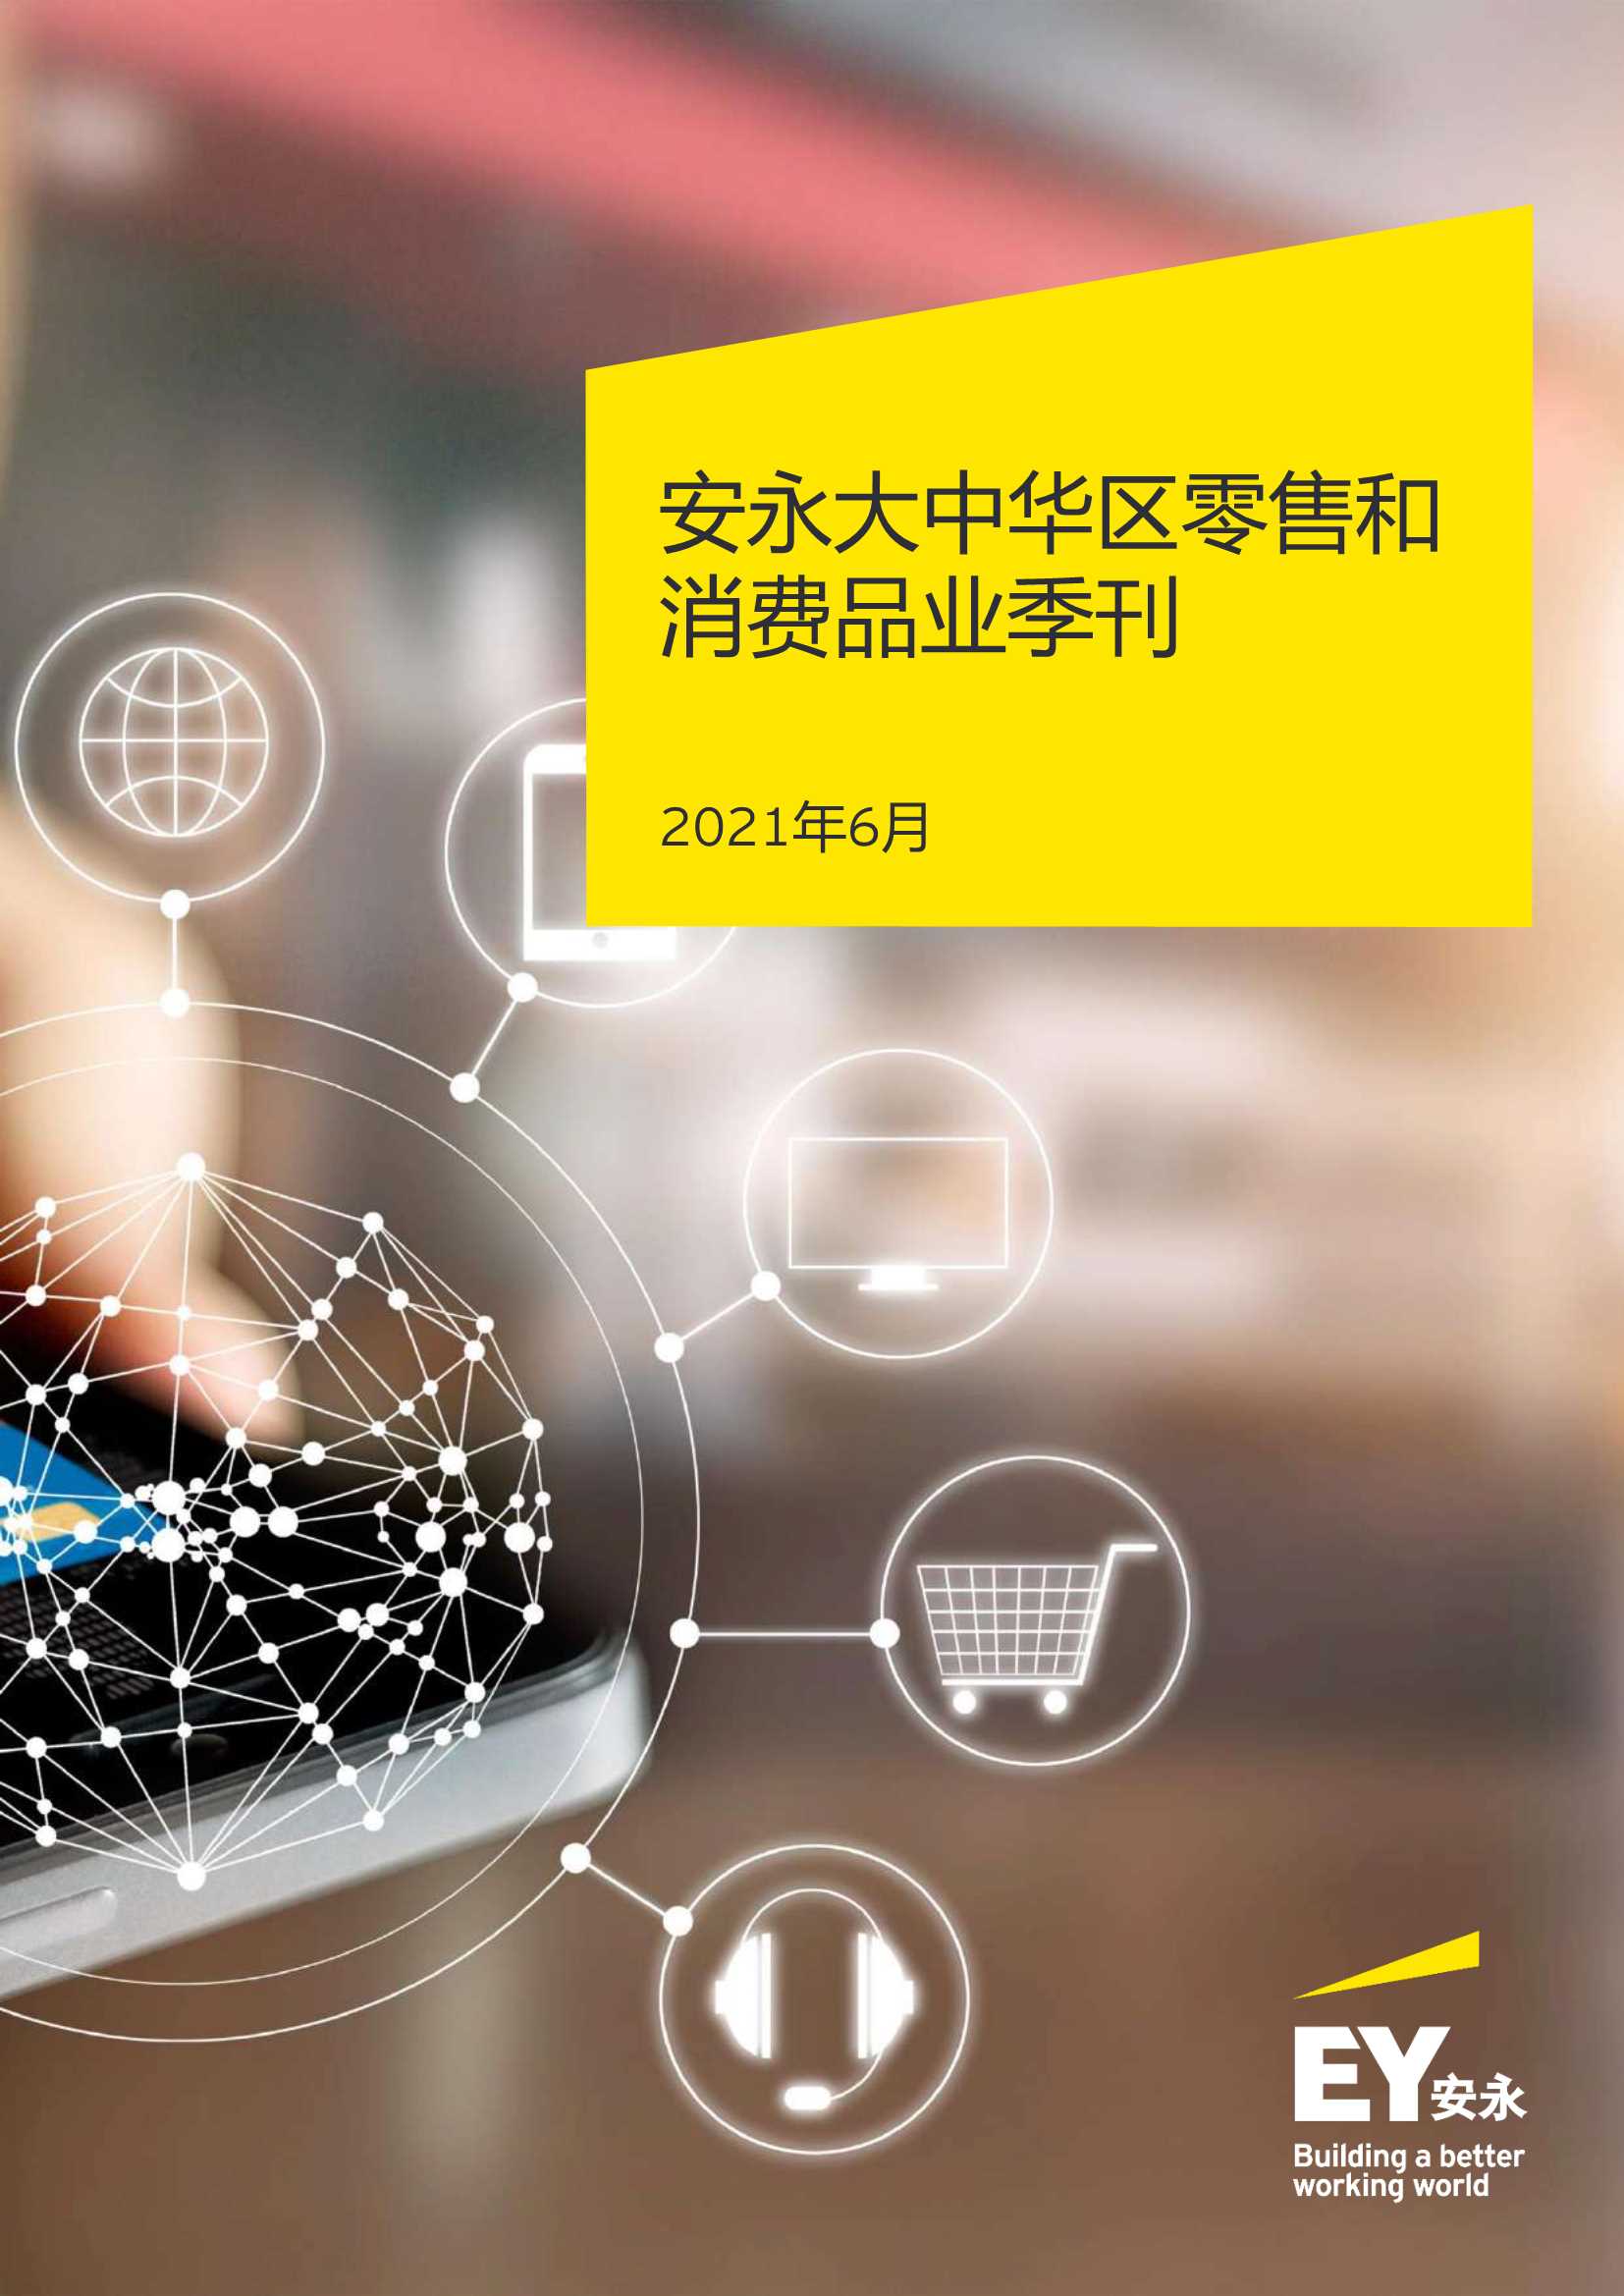 安永-安永大中华区零售和消费品业季刊 2021年6月刊-2021.06-19页